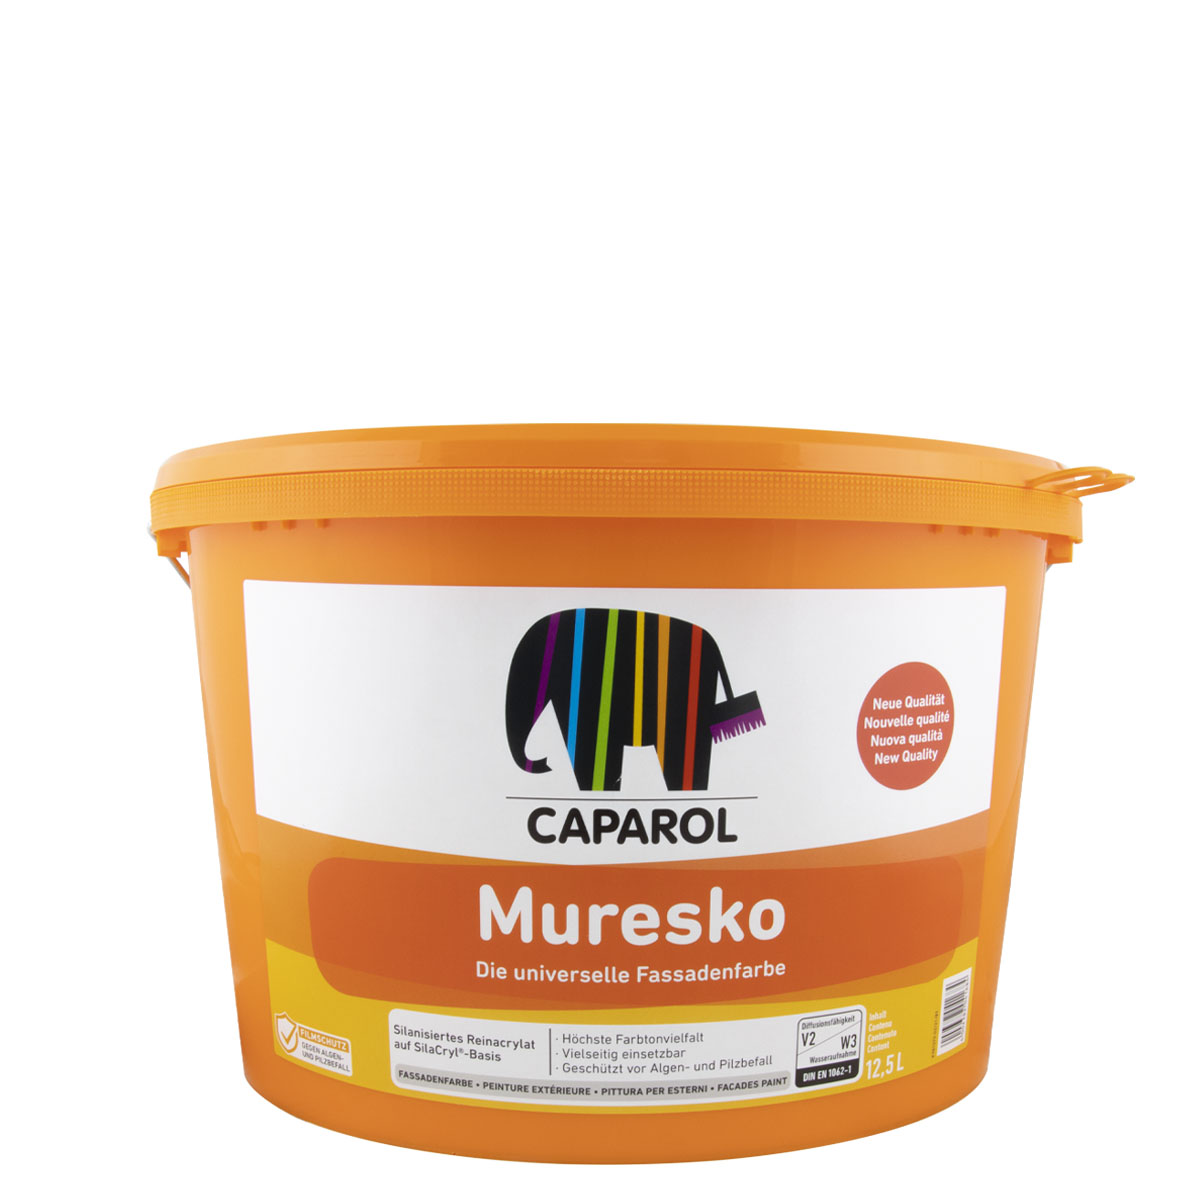 Caparol Muresko SilaCryl 12,5L MIX, PG A ,Siliconharz-Fassadenfarbe